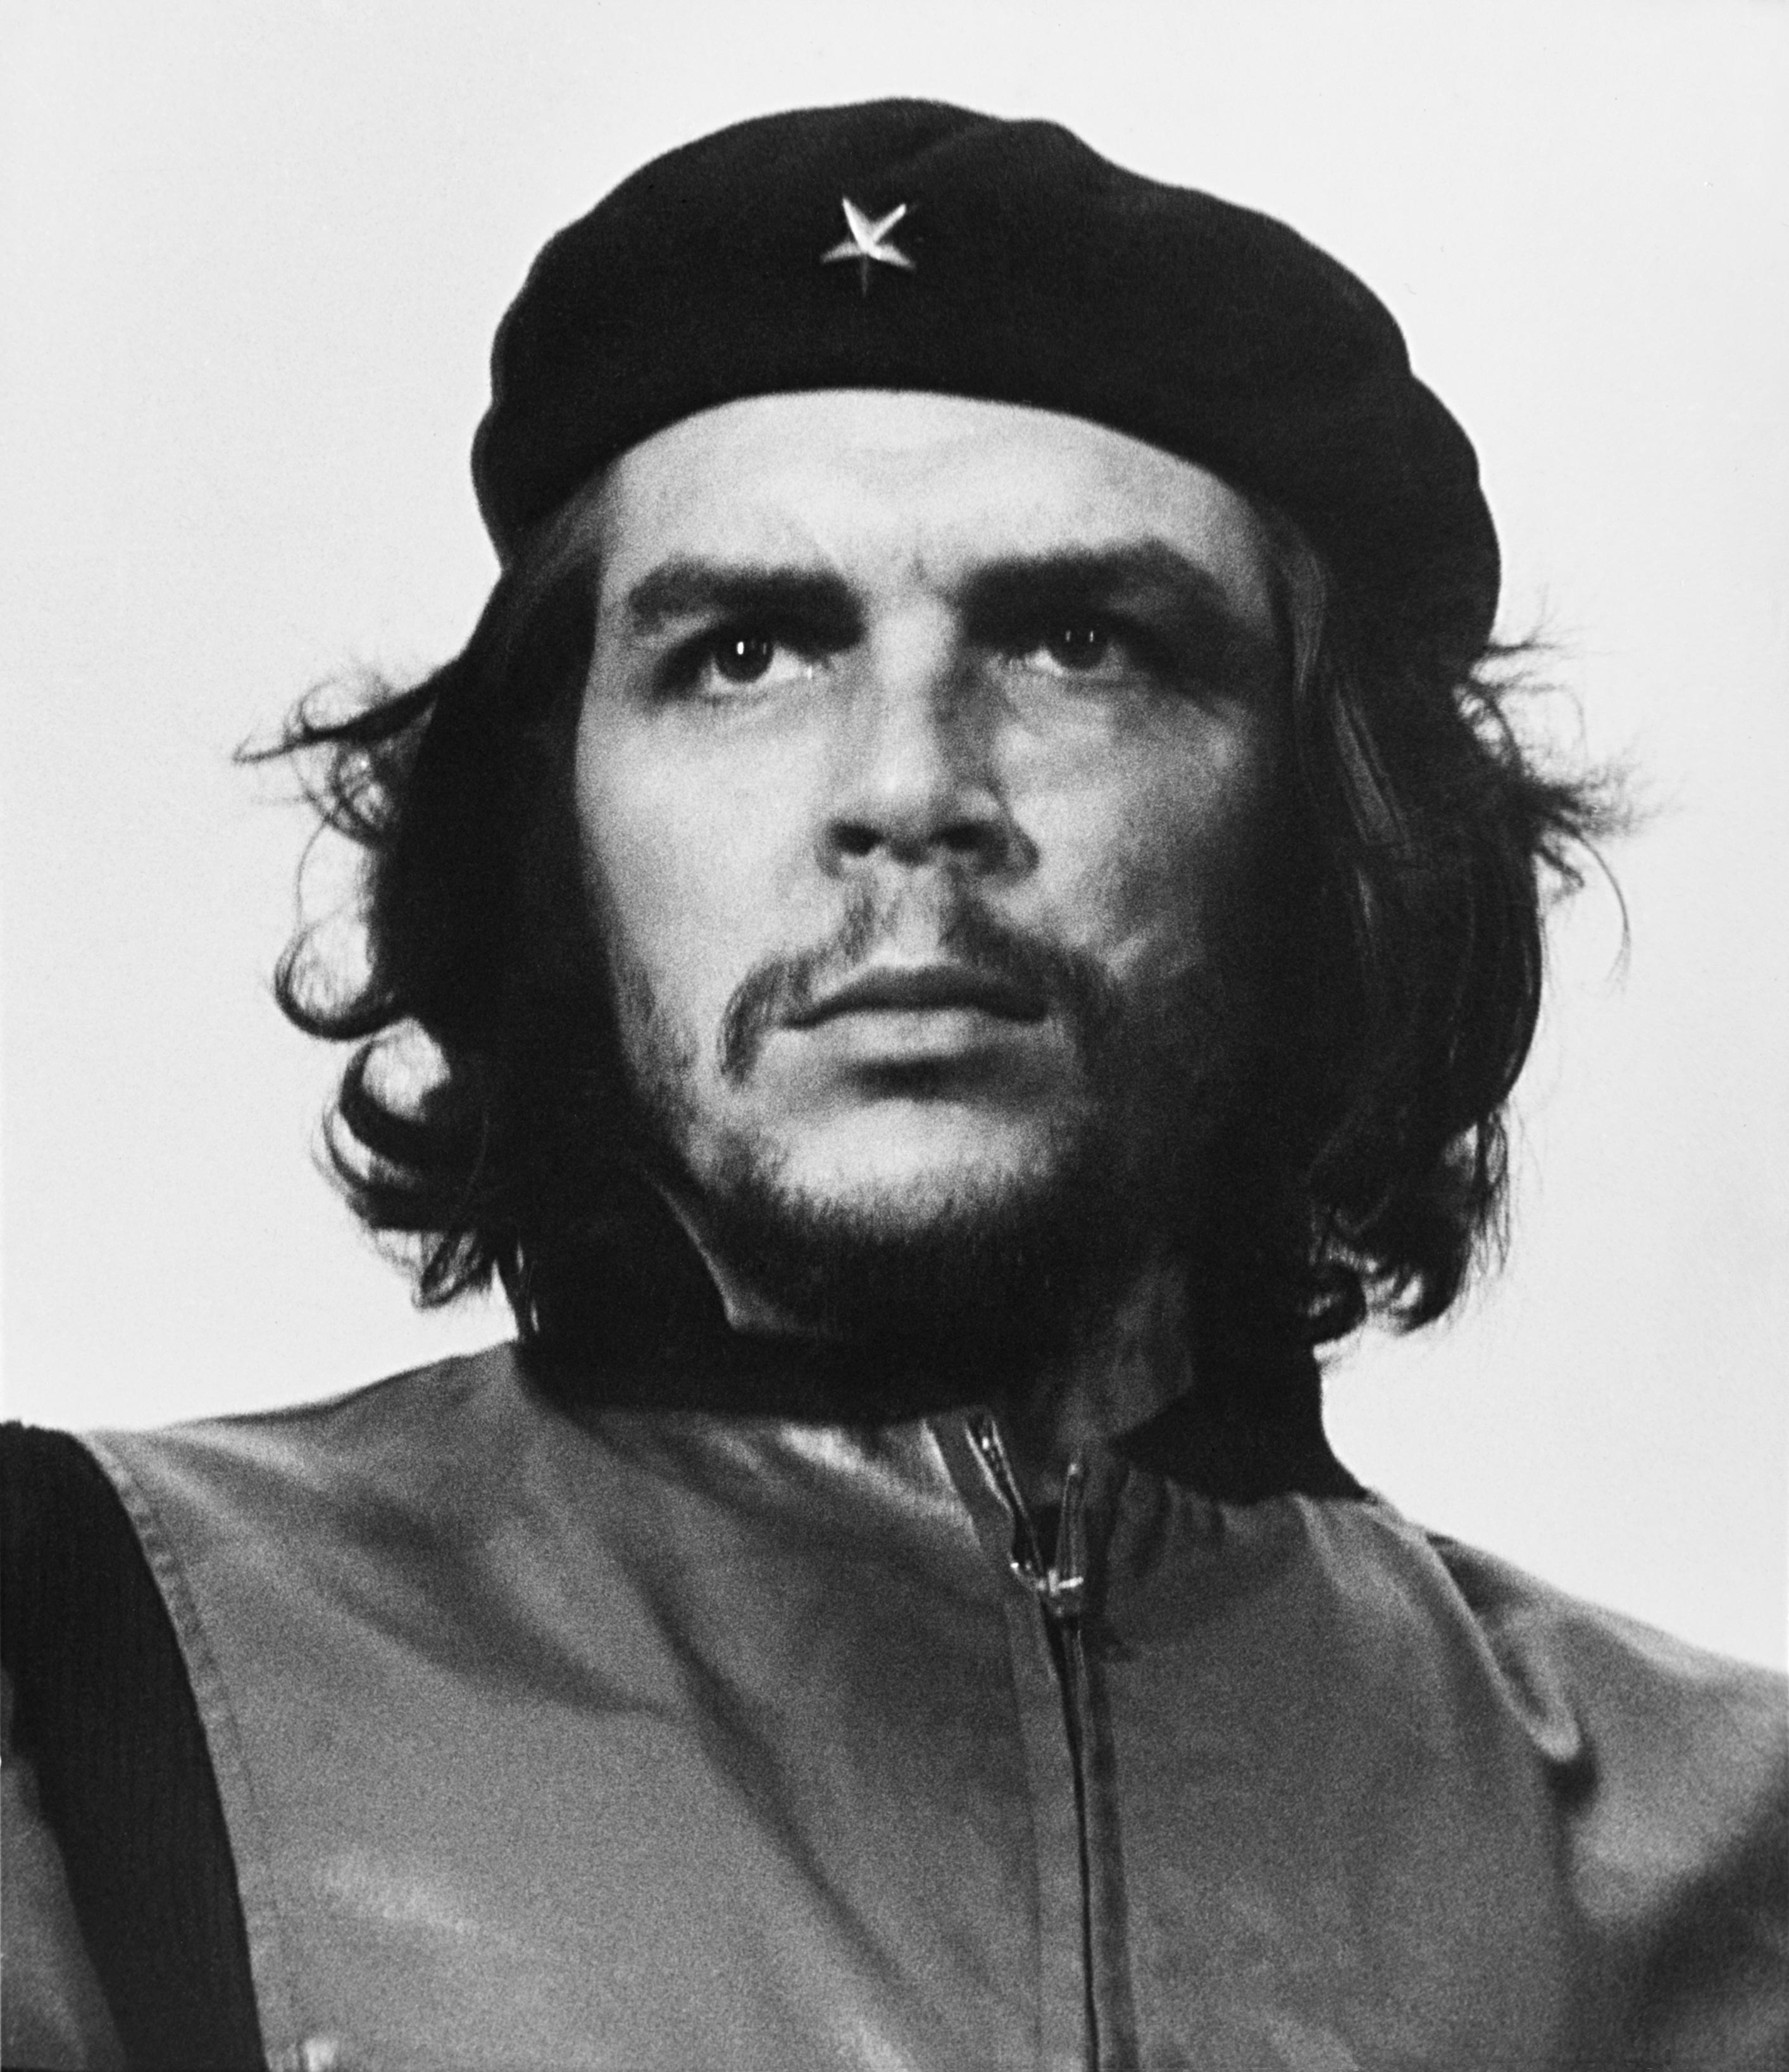 auteur Che Guevara de la citation Ce que nous considérons, c'est que le gouvernement vénézuélien n'est pas un gouvernement de gauche, n'a rien d'un gouvernement de gauche. C'est un oppresseur, un gouvernement oppressif, c'est un meurtrier - il les assure - les combats paysans dans la région de Falcon, par exemple, où il y a des conseillers militaires des États-Unis.